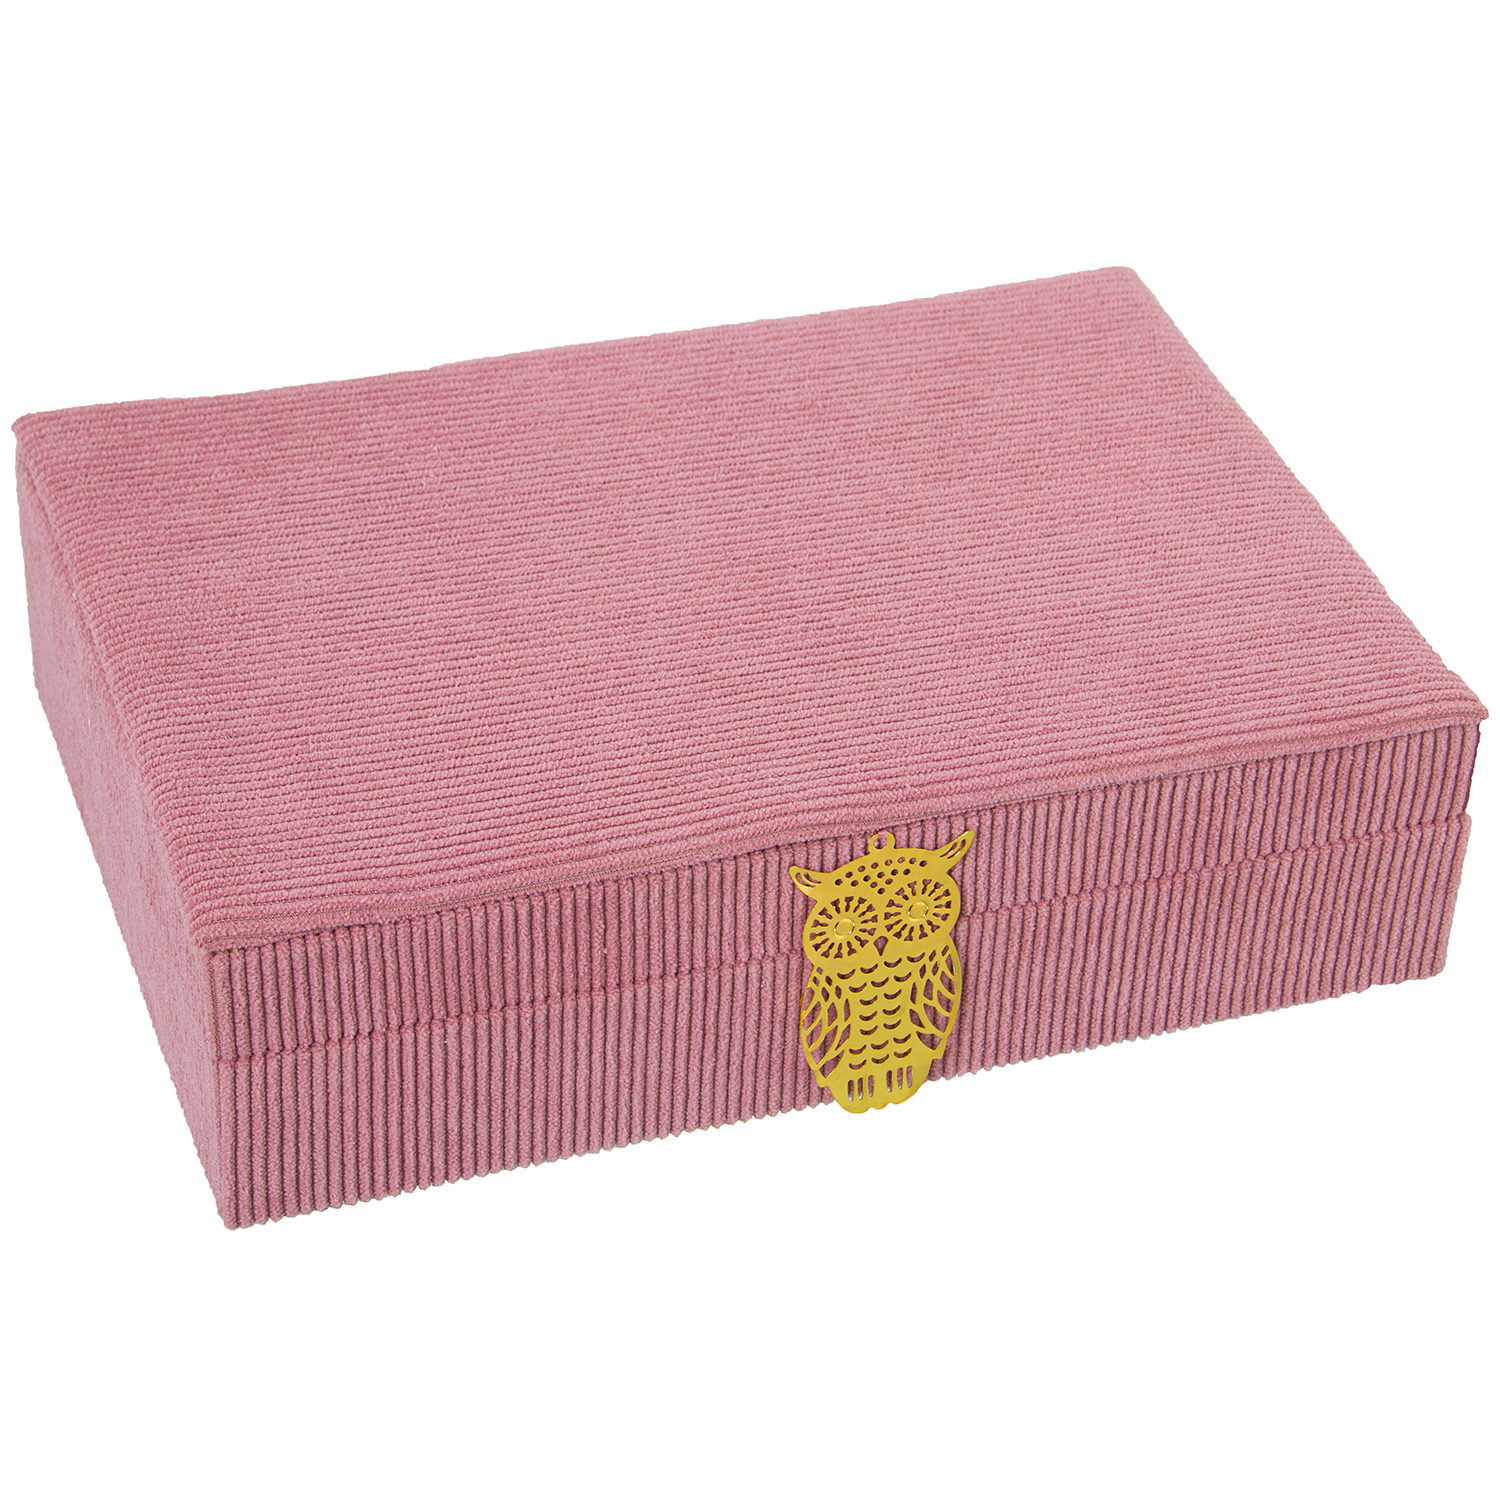 34202-caja-joyero-pana-rosa.gif